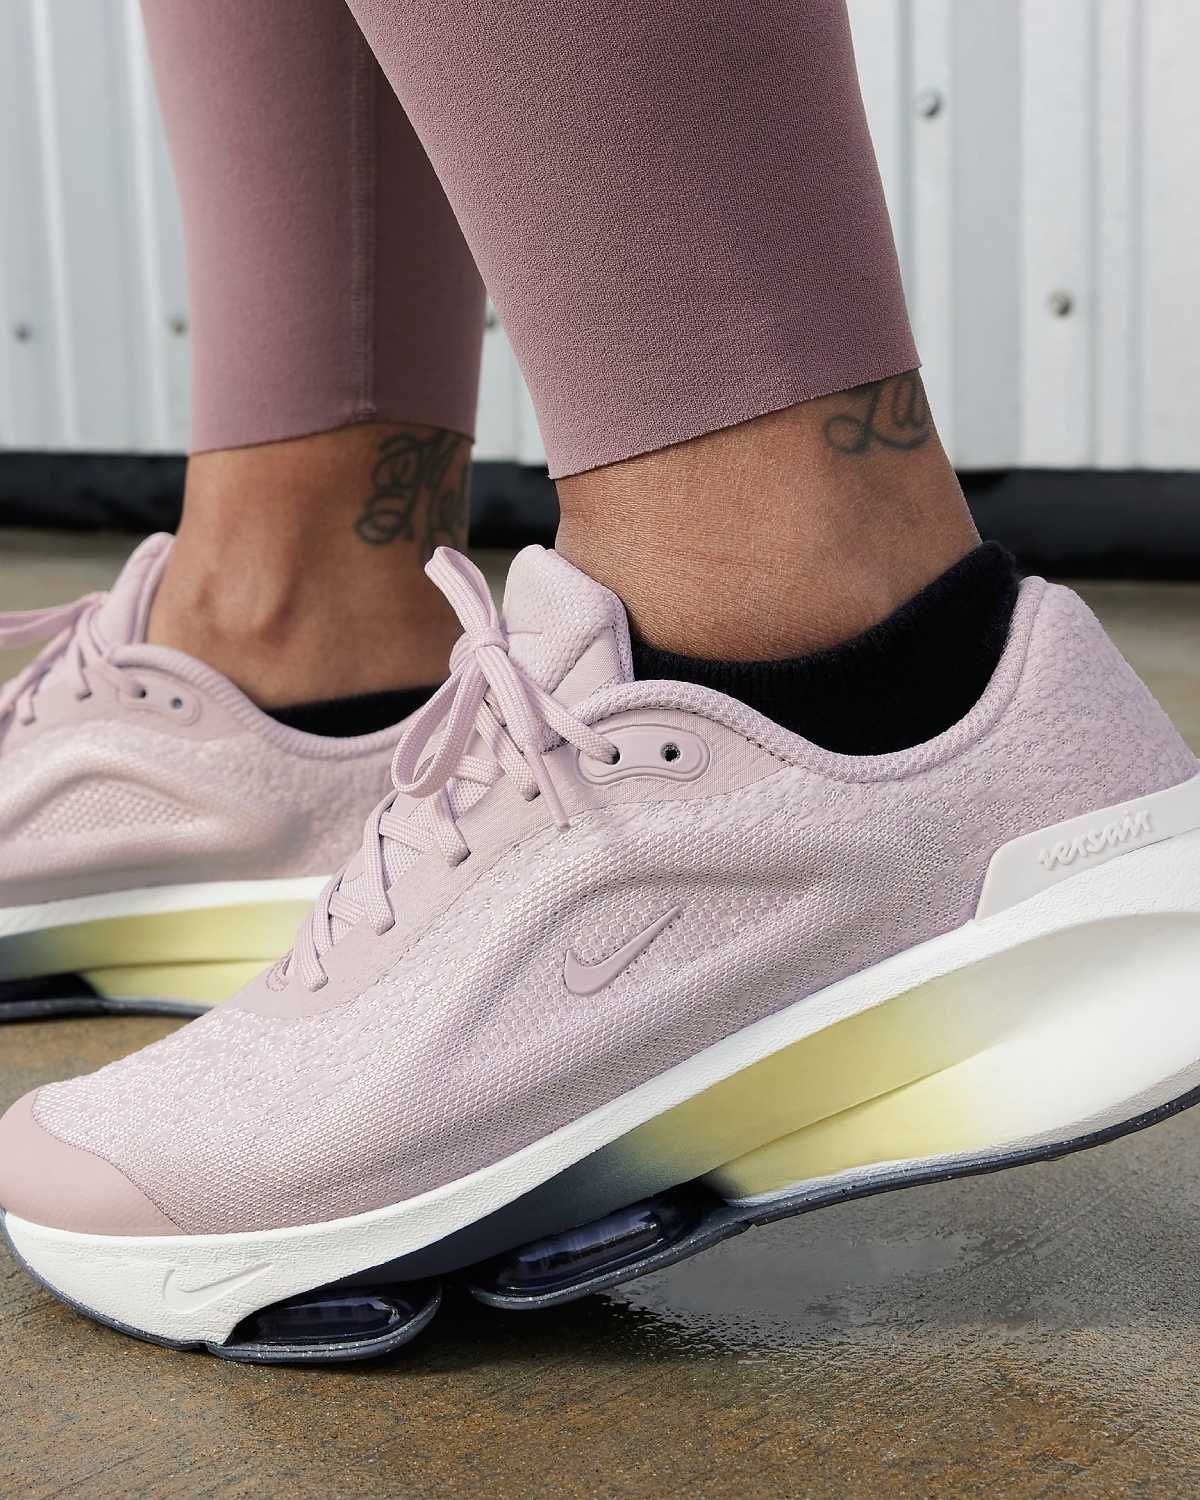 Queste 6 scarpe Nike da donna sono perfette per camminare e combinano comfort e stile